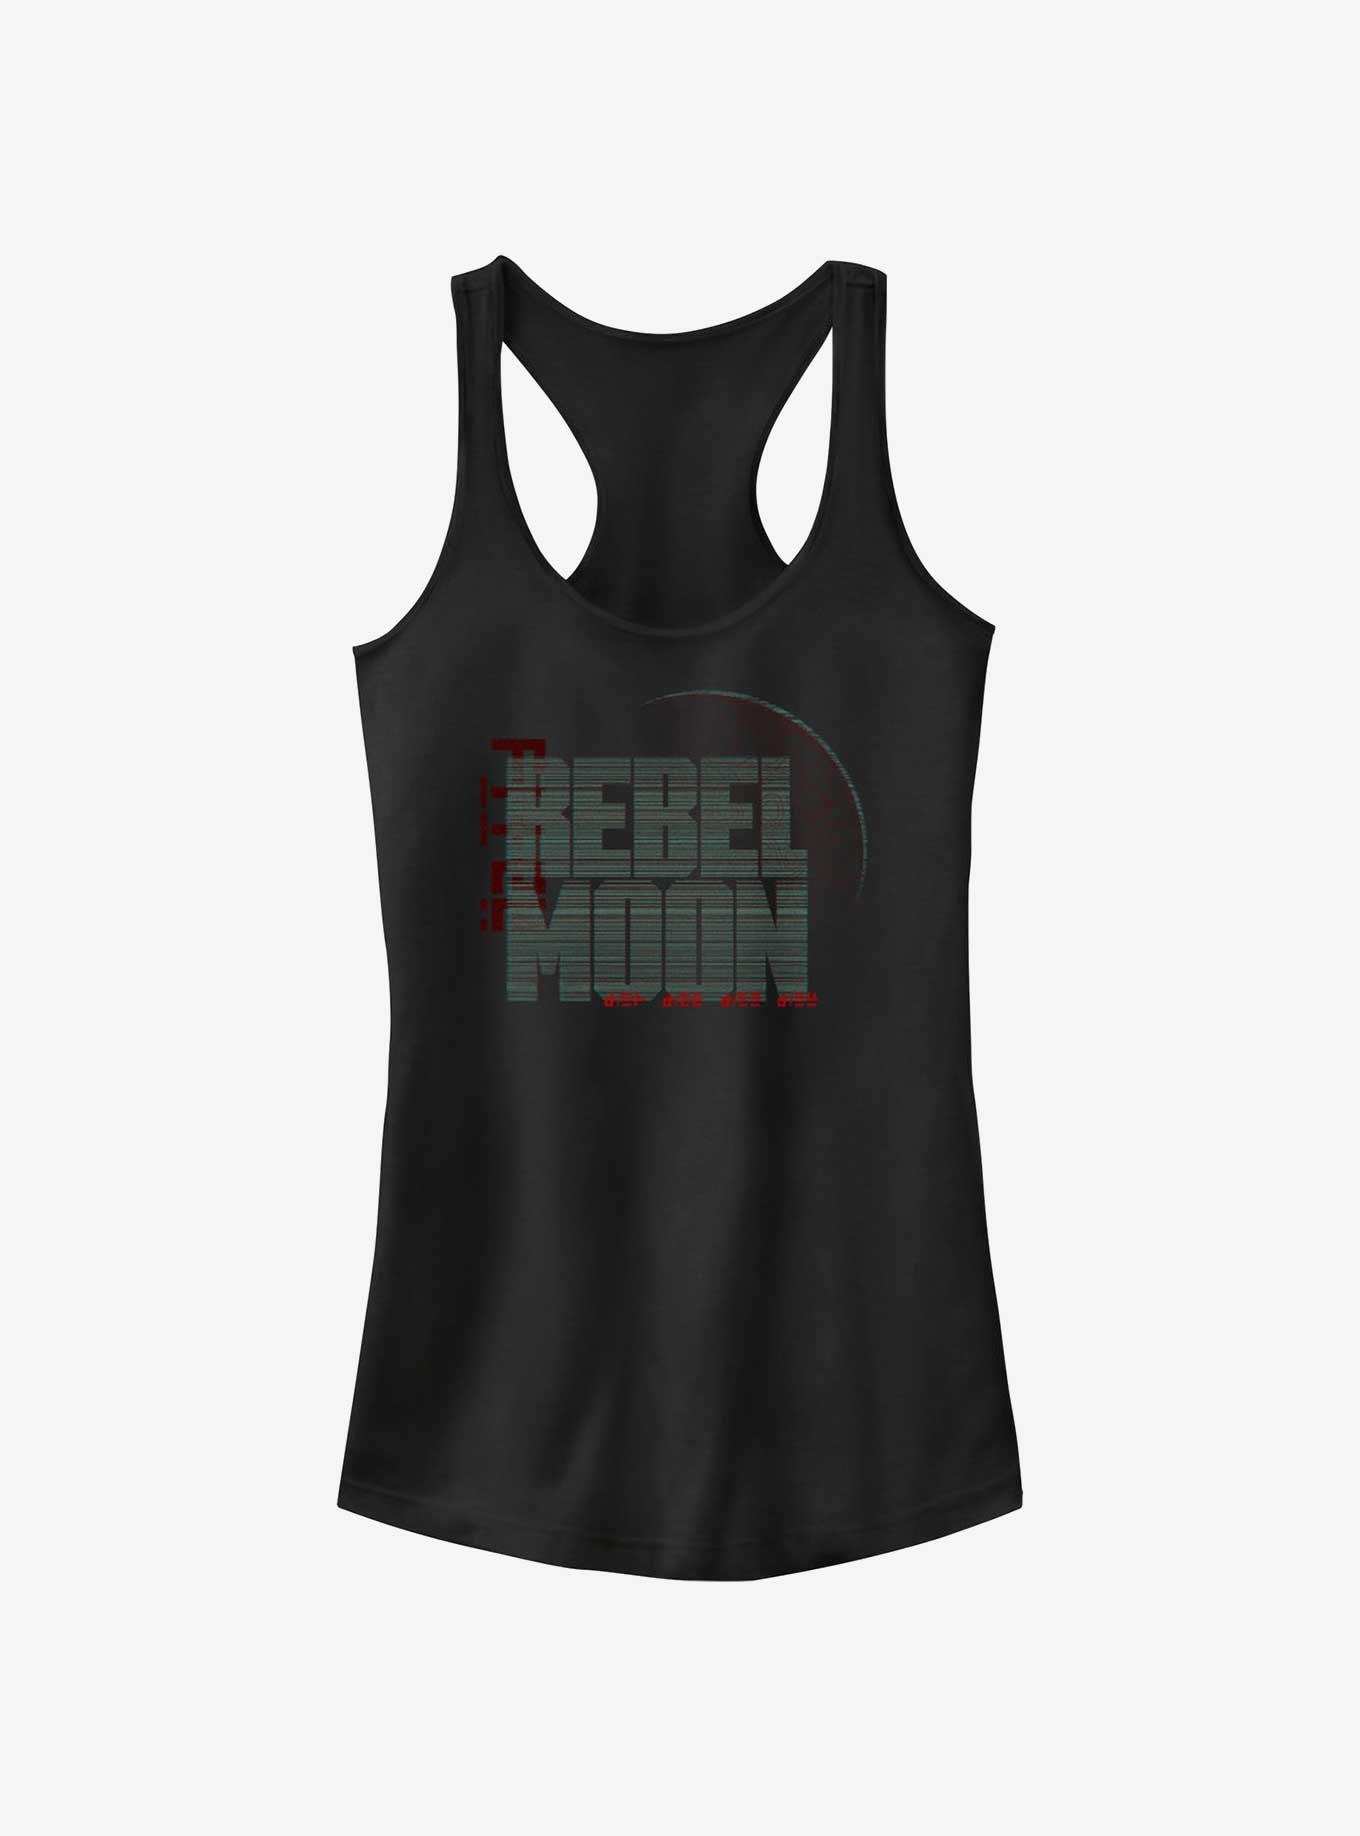 Rebel Moon Symbols Logo Girls Tank